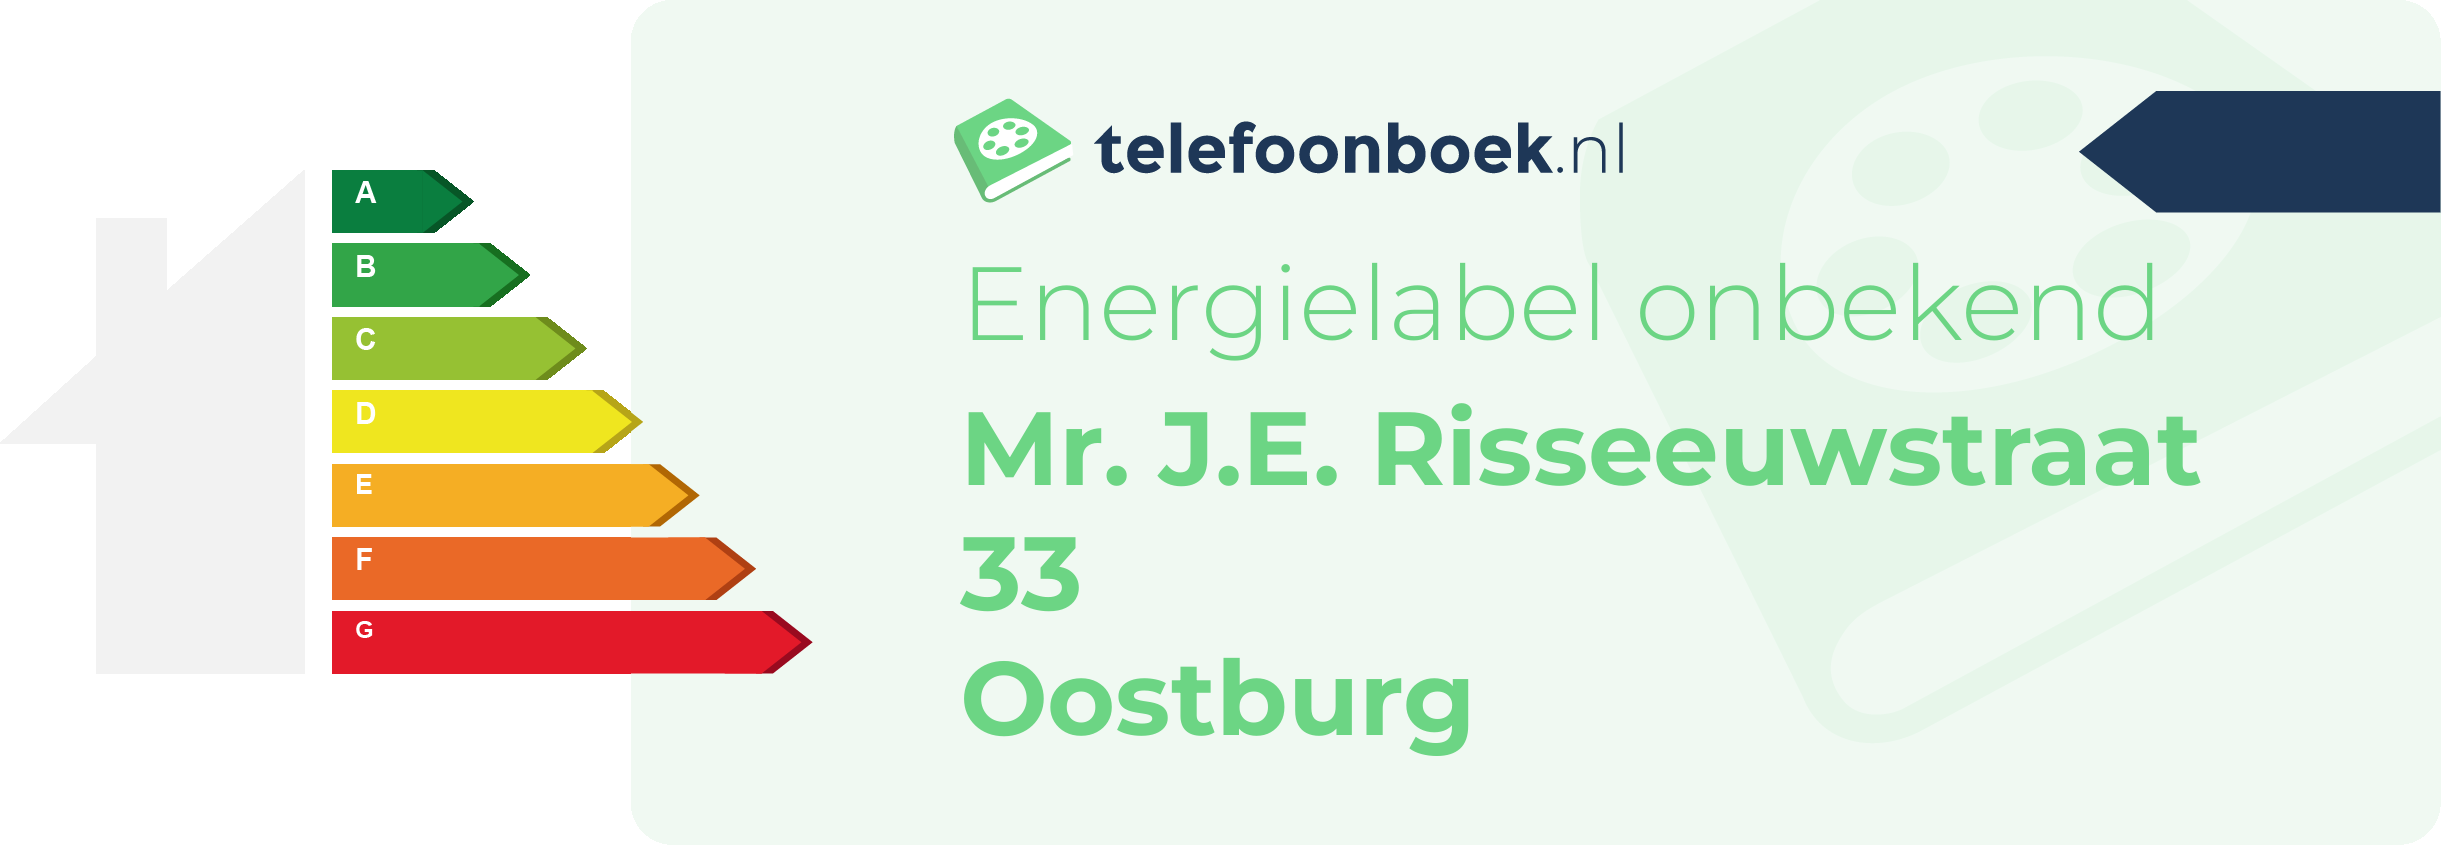 Energielabel Mr. J.E. Risseeuwstraat 33 Oostburg